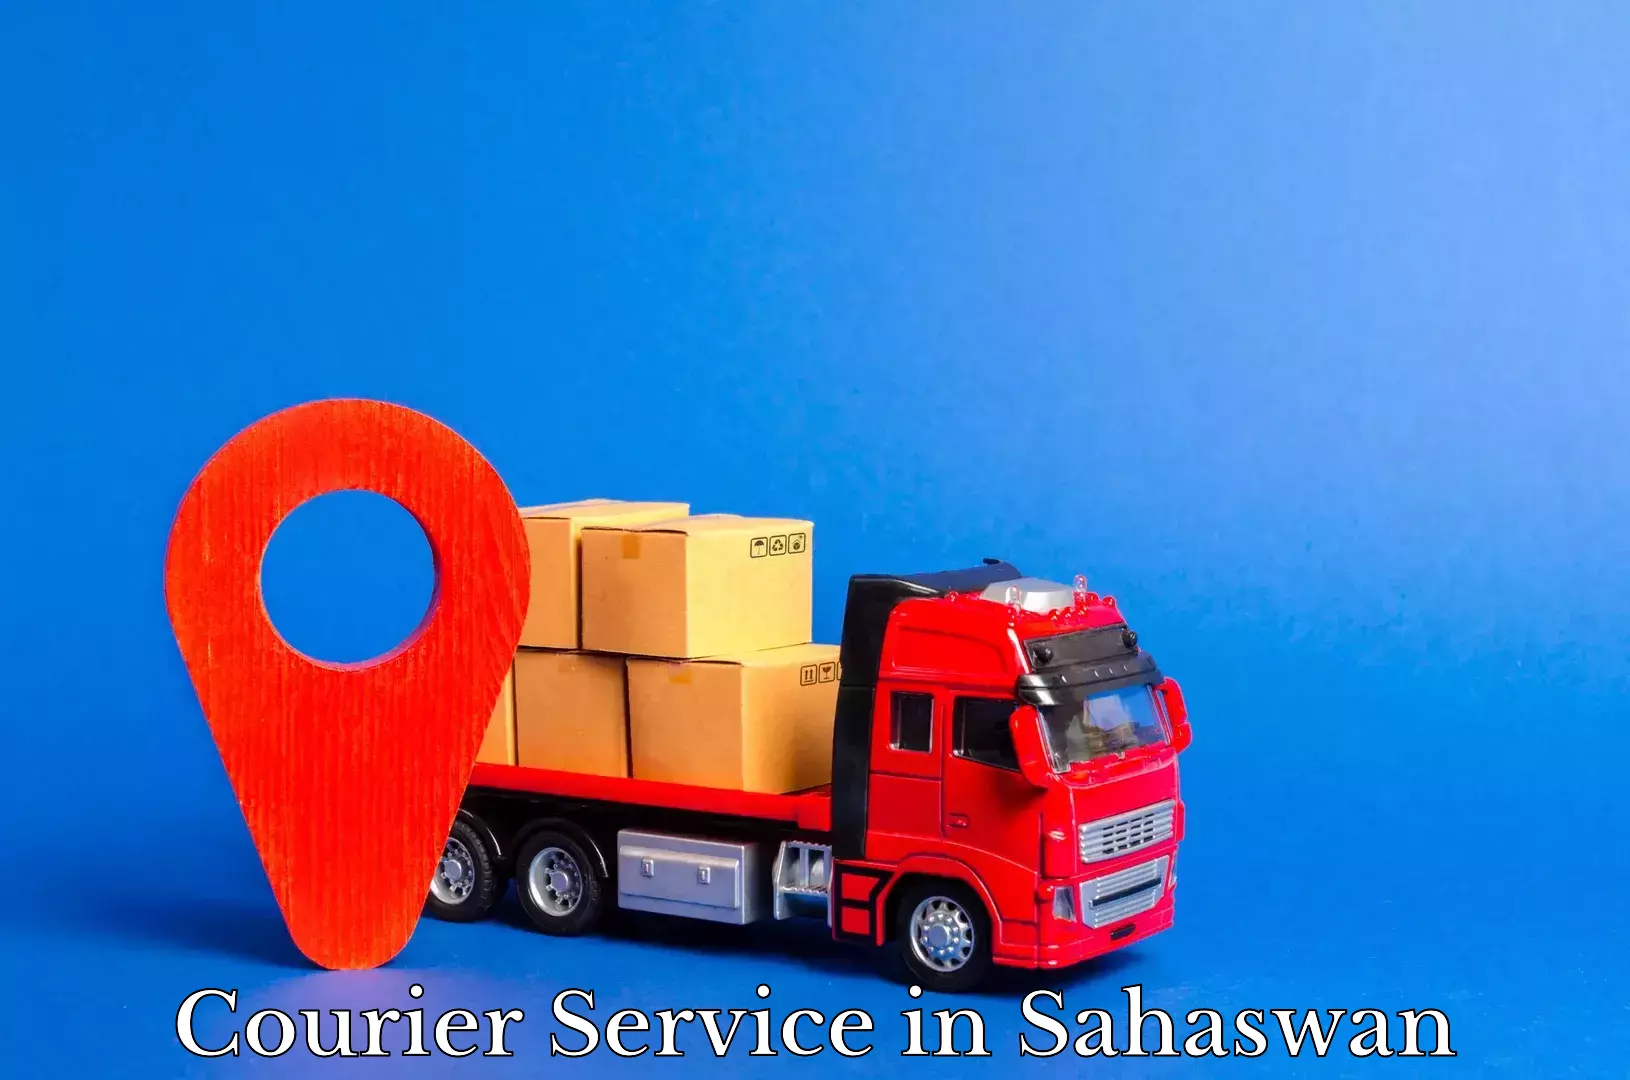 Smart shipping technology in Sahaswan